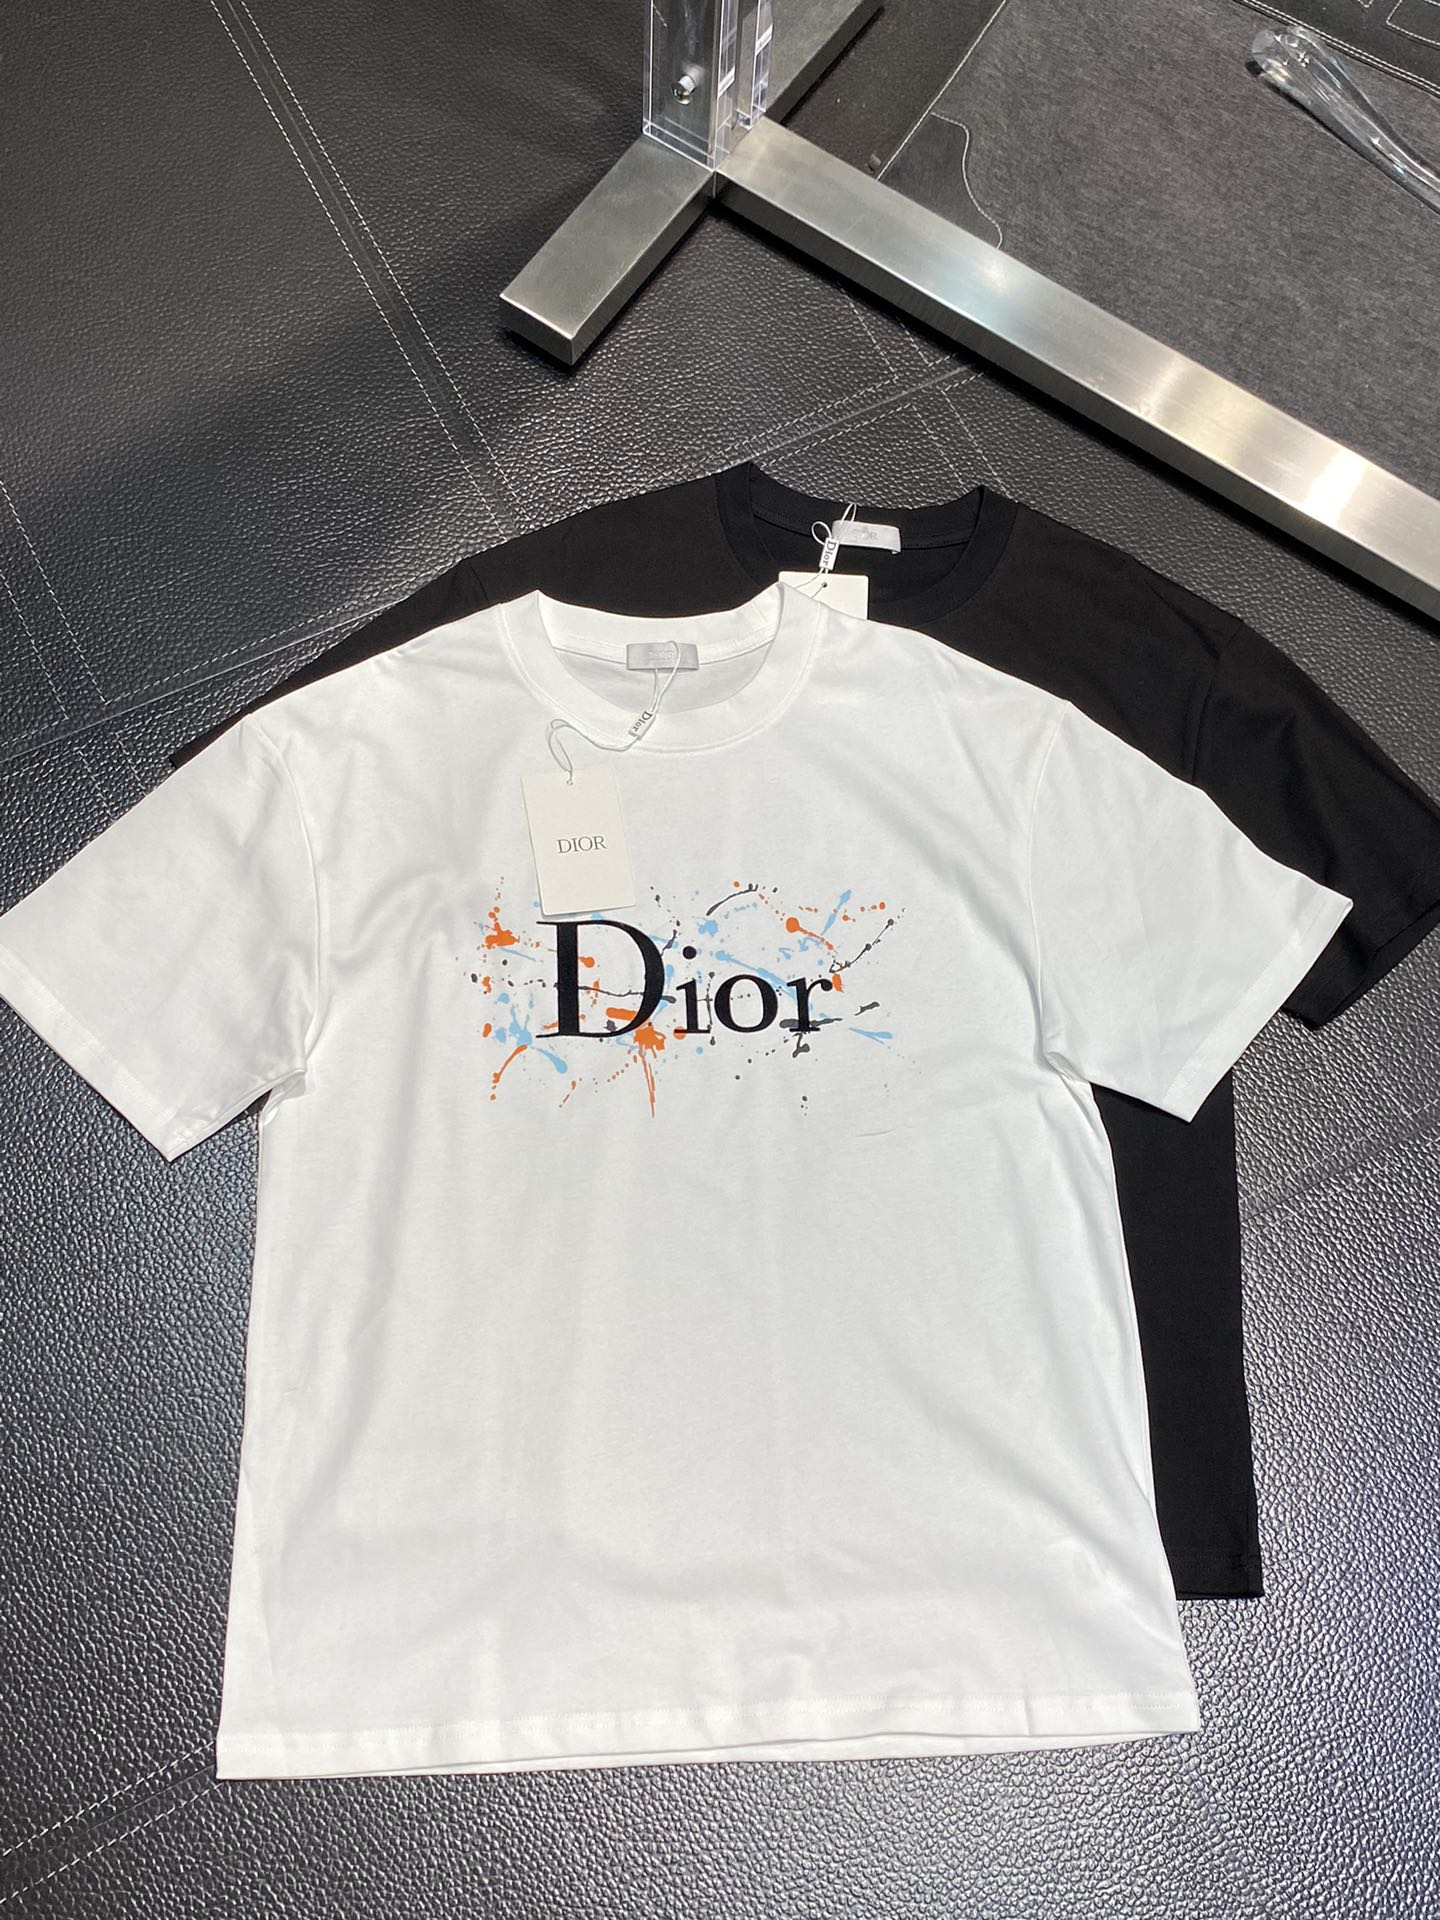 Most Desired
 Dior AAAAA
 Clothing T-Shirt Men Fashion Short Sleeve